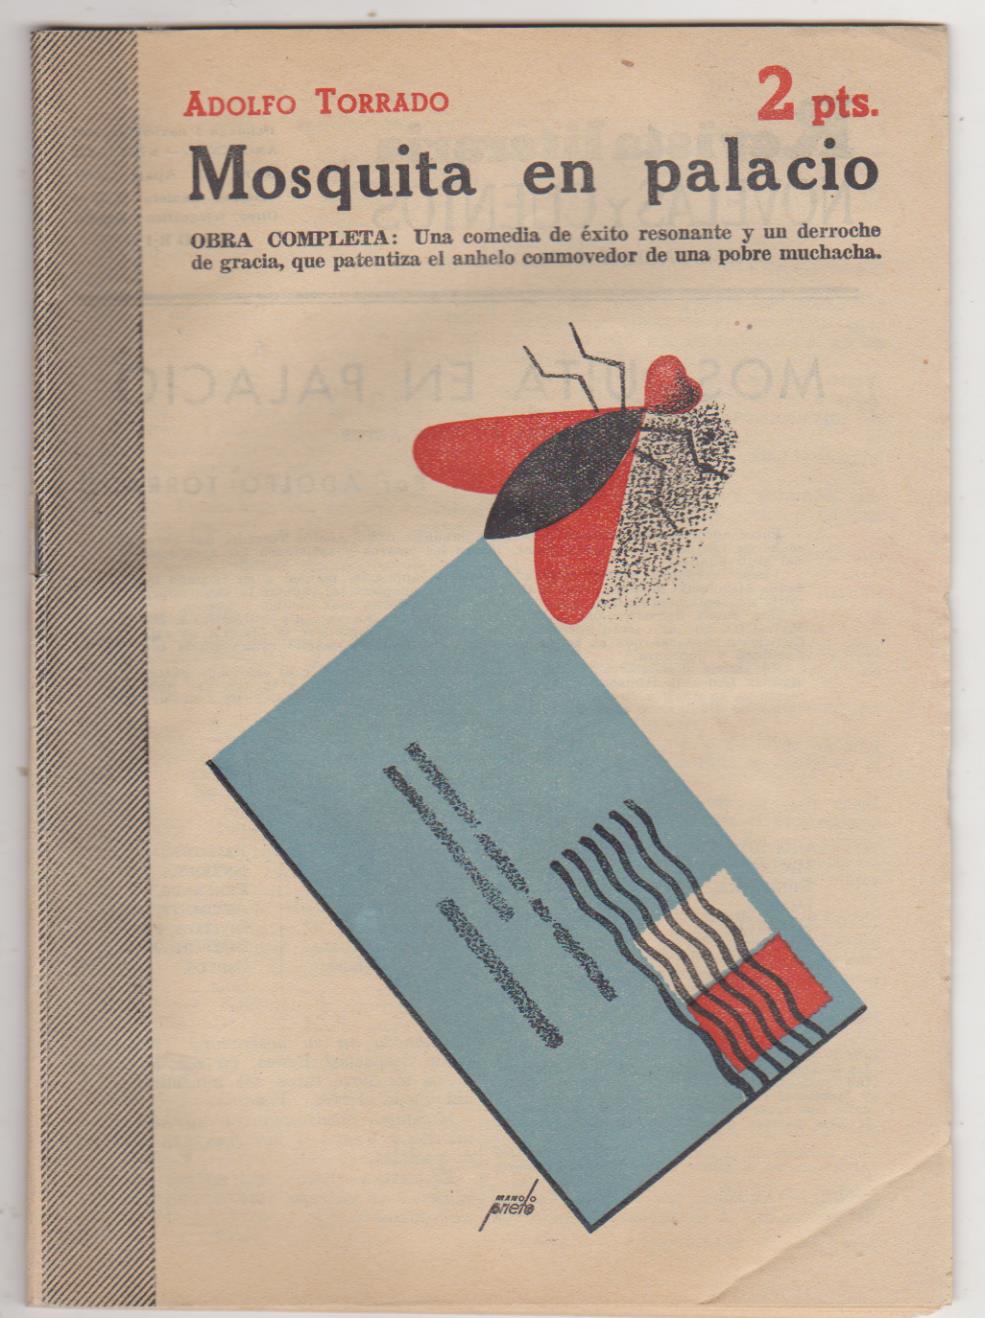 Revista Literaria nº 1121. Adolfo Torrado. Mosquita en palacio. Año 1952